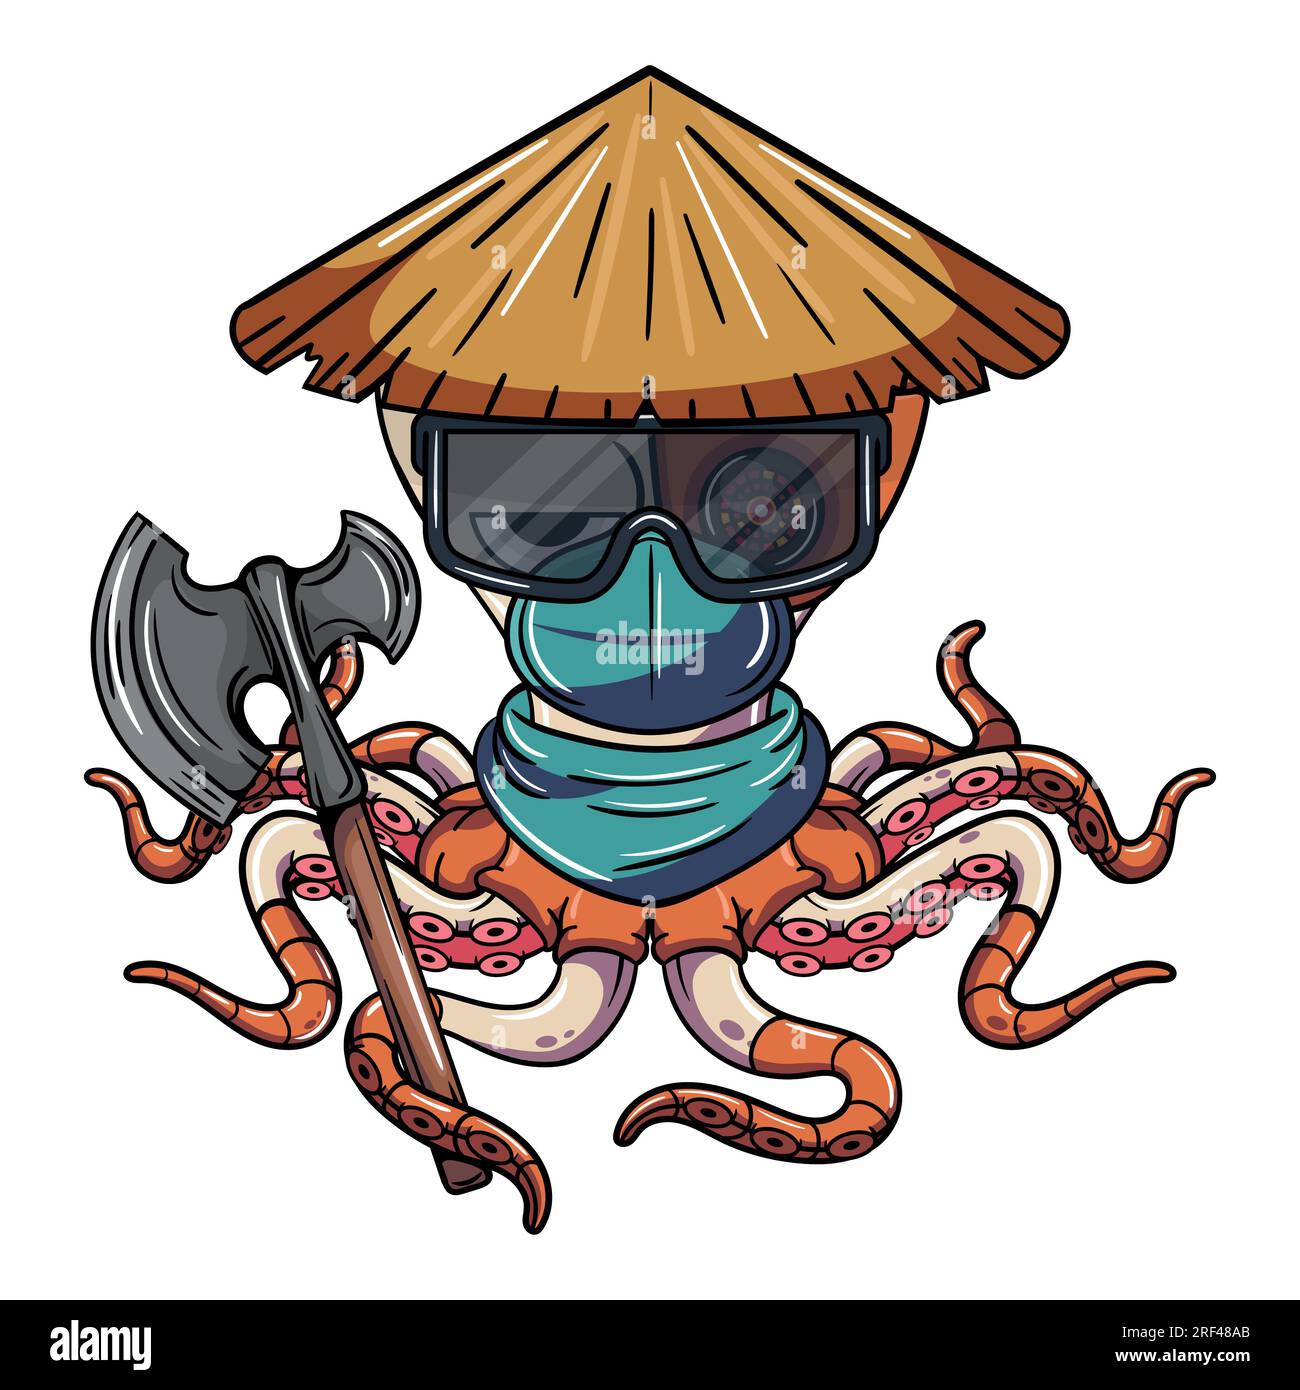 Personnage de poulpe cyborg de dessin animé avec chapeau chinois, une hache de guerre, des lunettes et un masque facial. Illustration pour la fantaisie, la science-fiction et la bande dessinée d'aventure Illustration de Vecteur